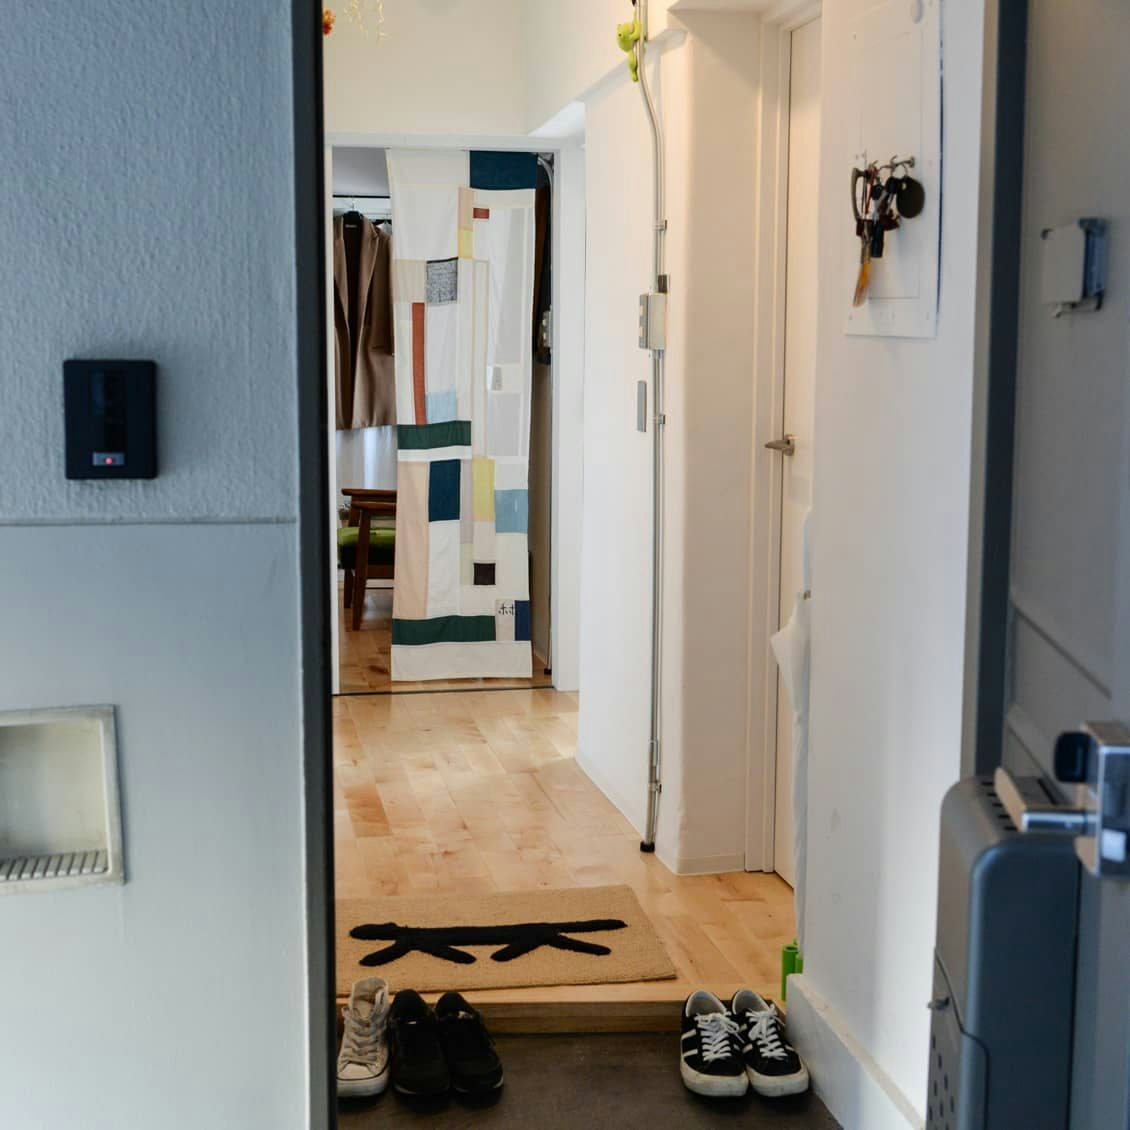 悩み解消 玄関は狭いけど 靴収納にデッドスペース活用するアイデア 北欧 暮らしの道具店